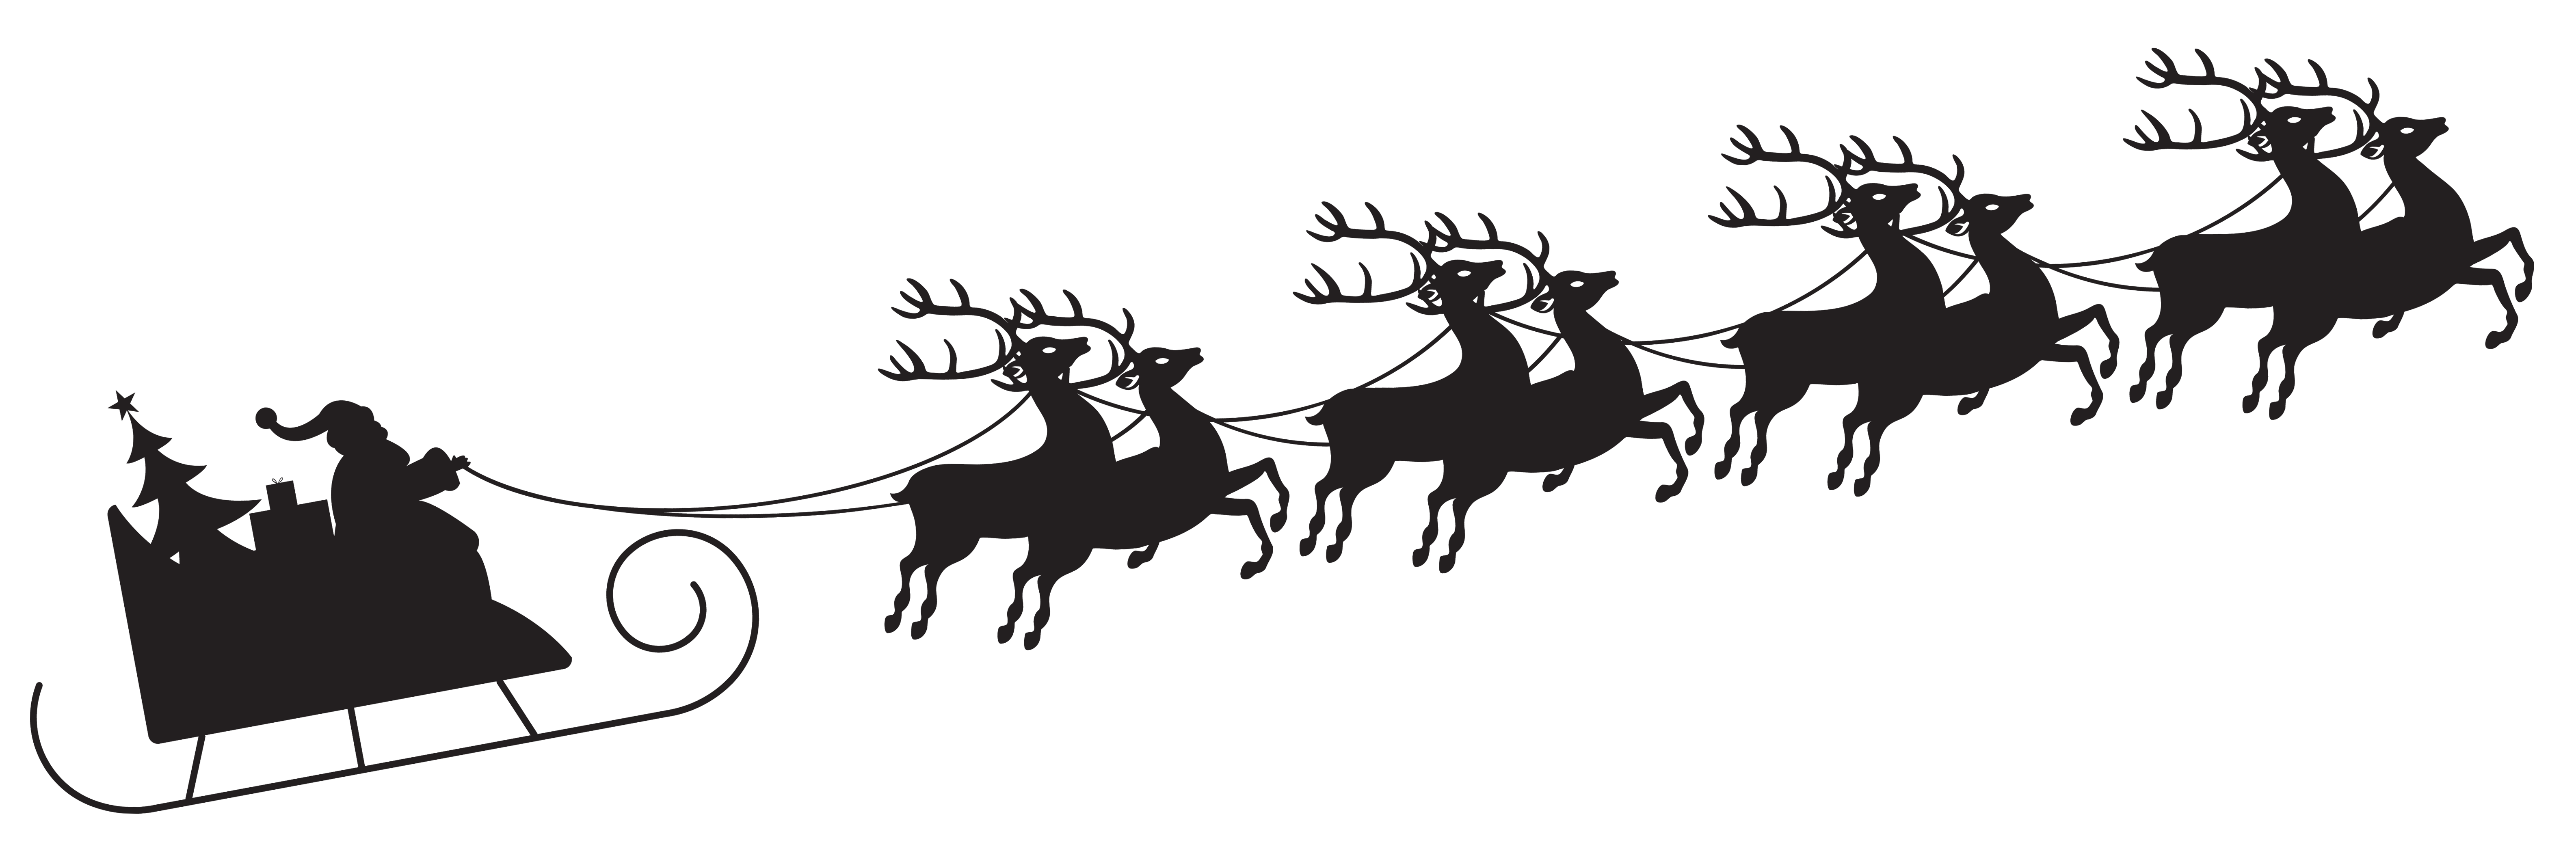 Silhouette Claus Reindeer Santa Sleigh Christmas Clipart